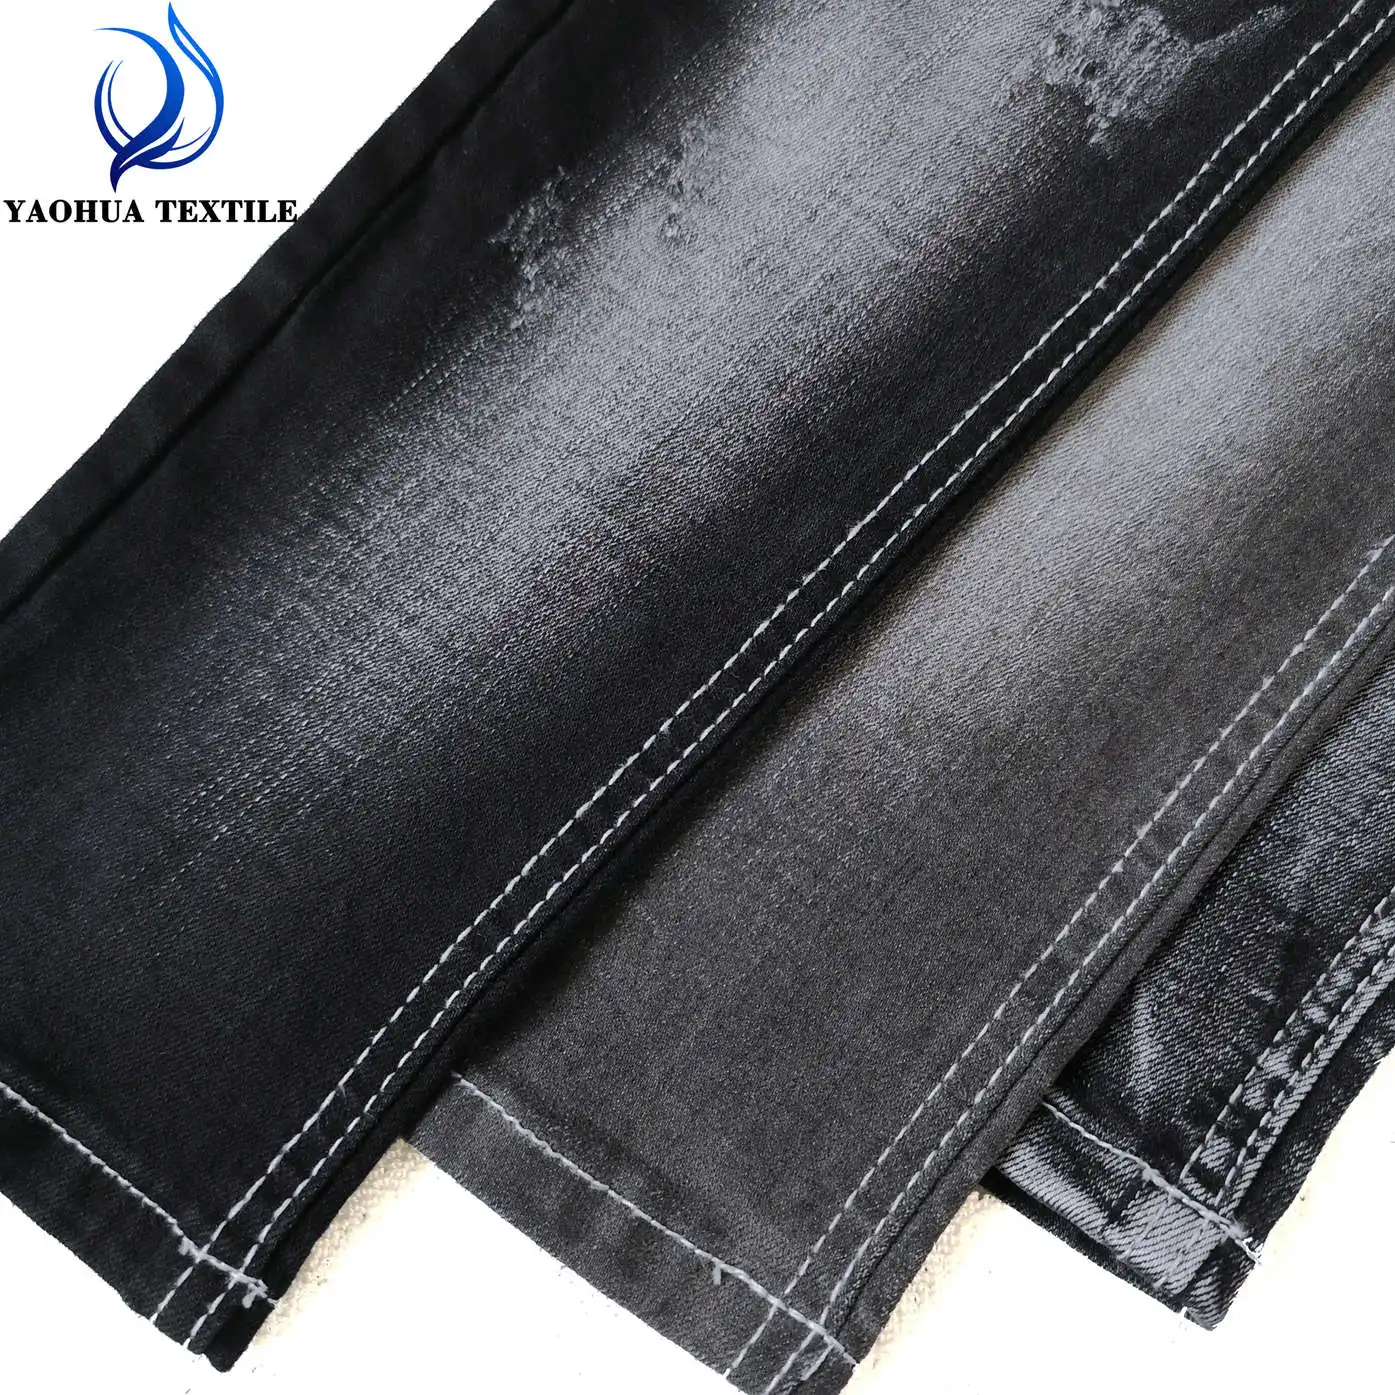 CK769-tela vaquera elástica de algodón, poliéster, spandex, tejido lavado, color negro